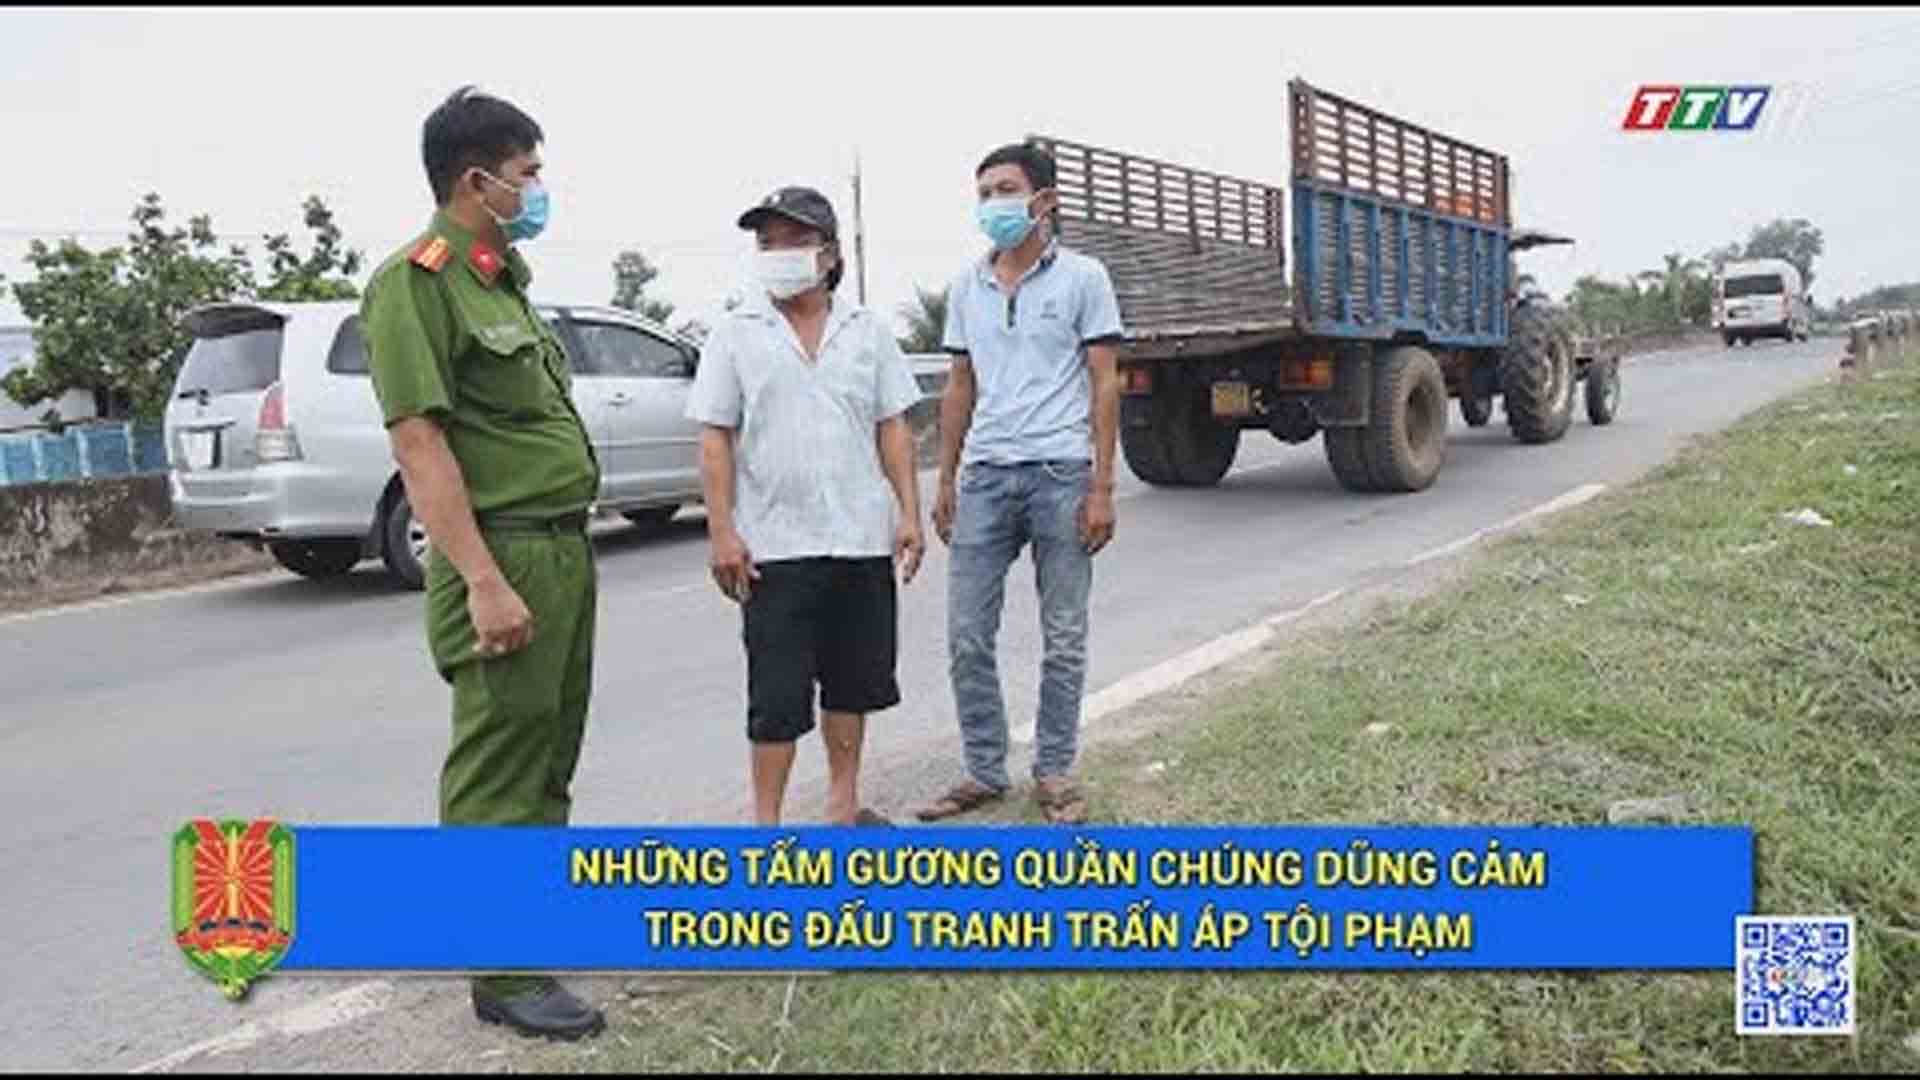 Những tấm gương quần chúng dũng cảm trong đấu tranh trấn áp tội phạm | An ninh Tây Ninh | TayNinhTV